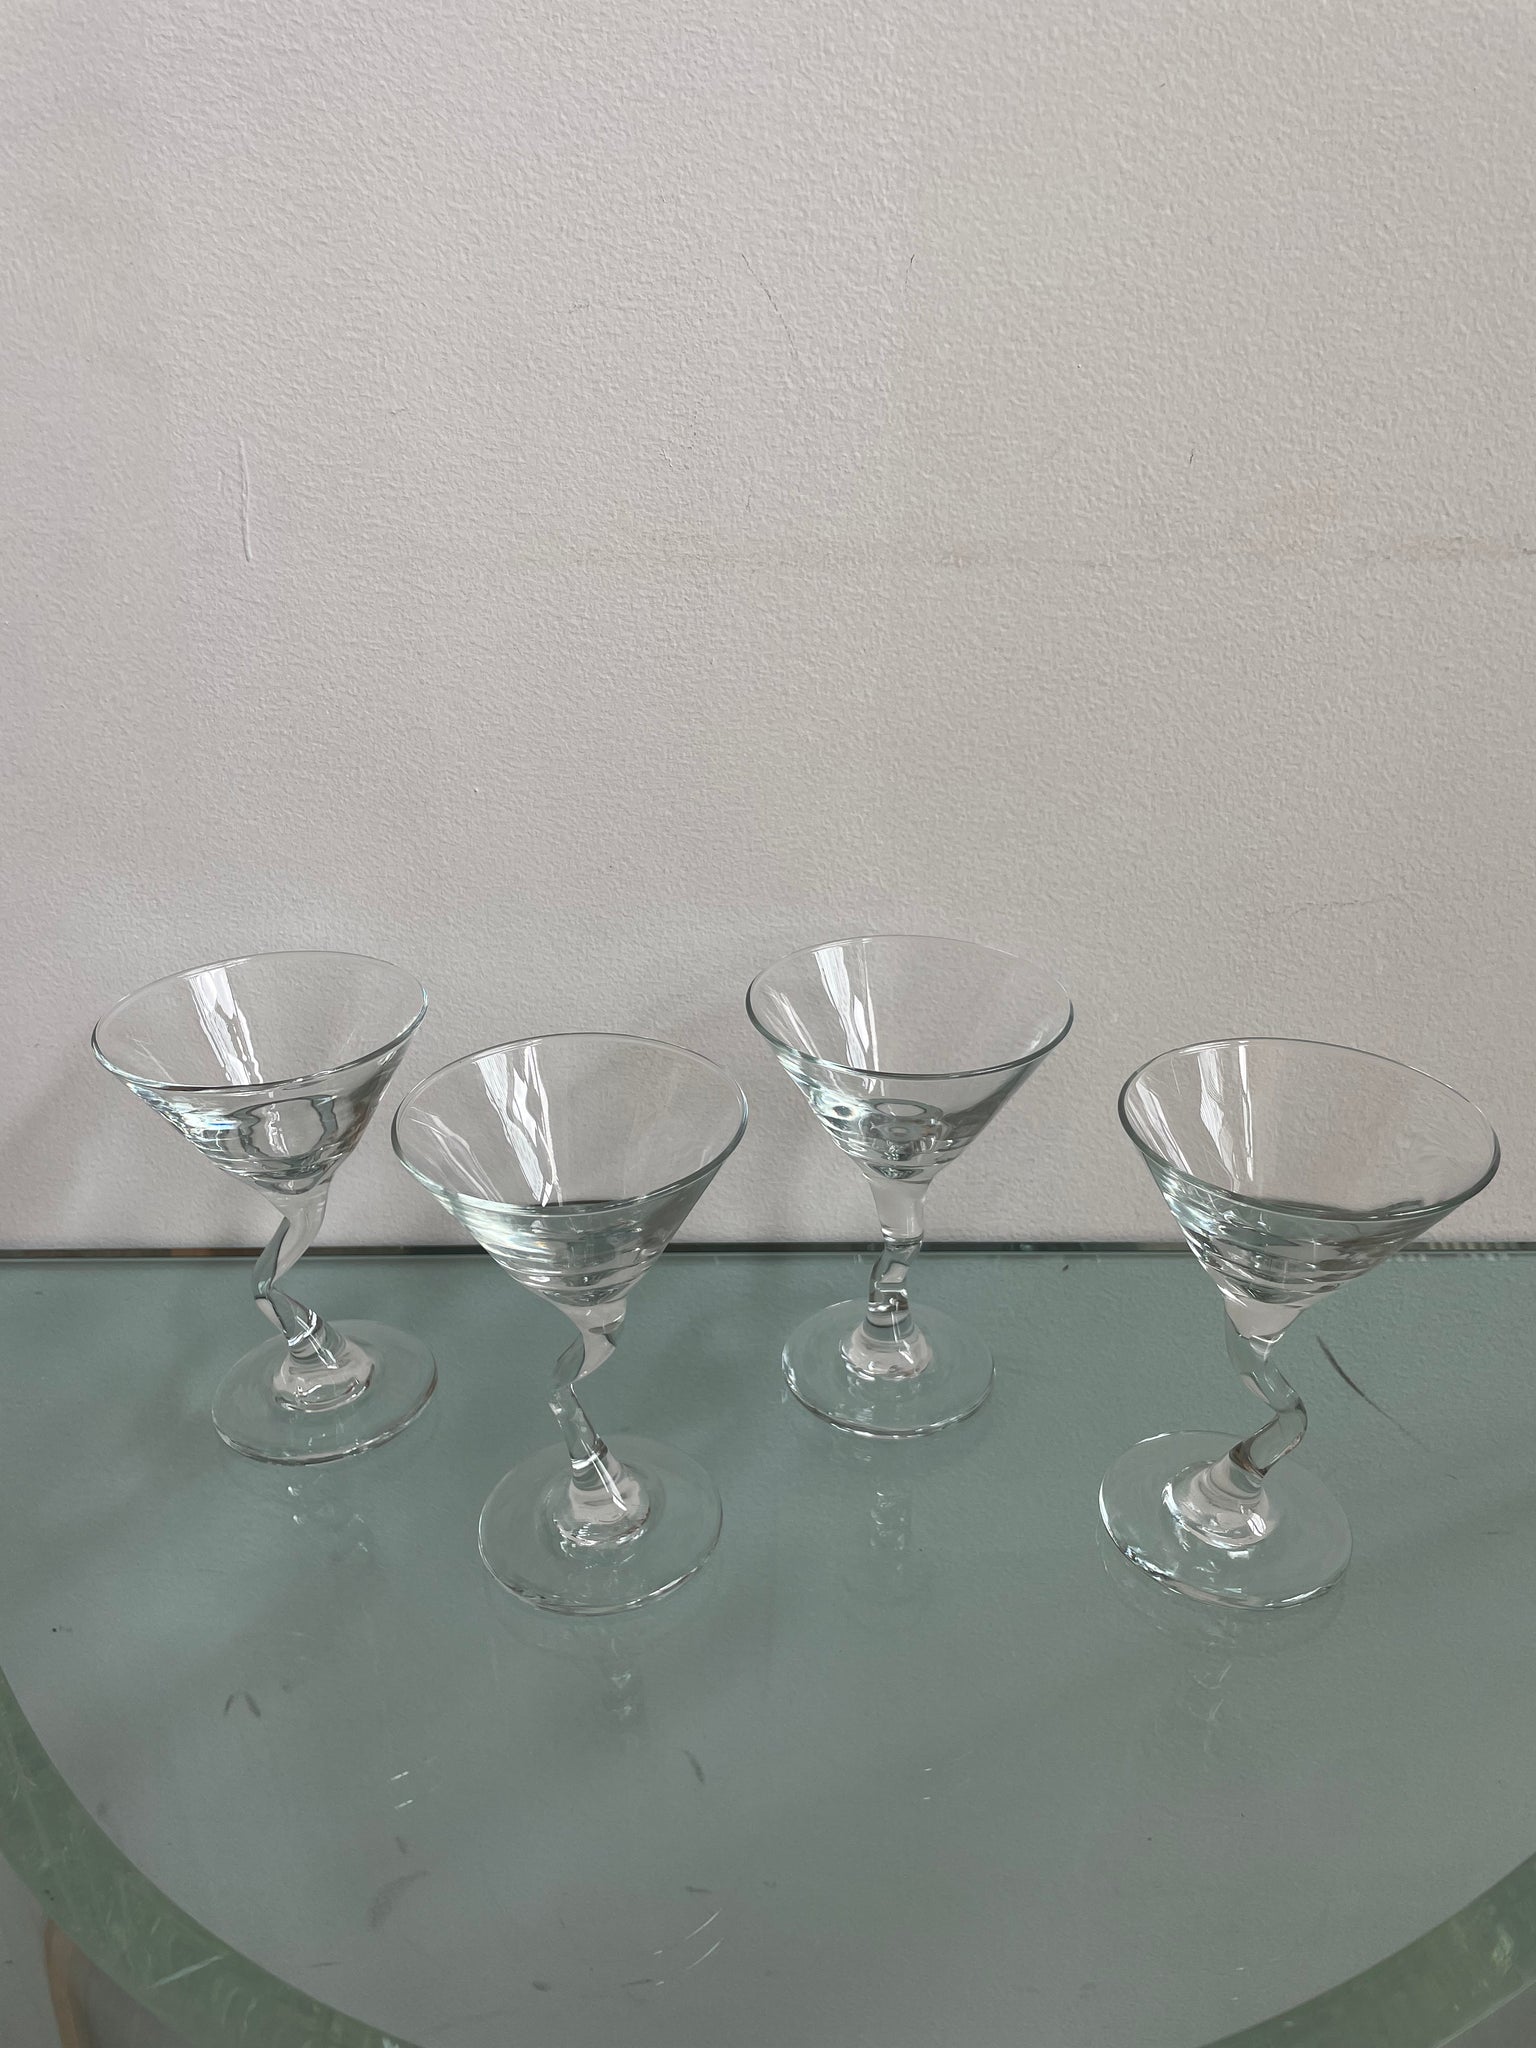 WAVY STEM COCKTAIL GLASSES – Ri-Ri-Ku